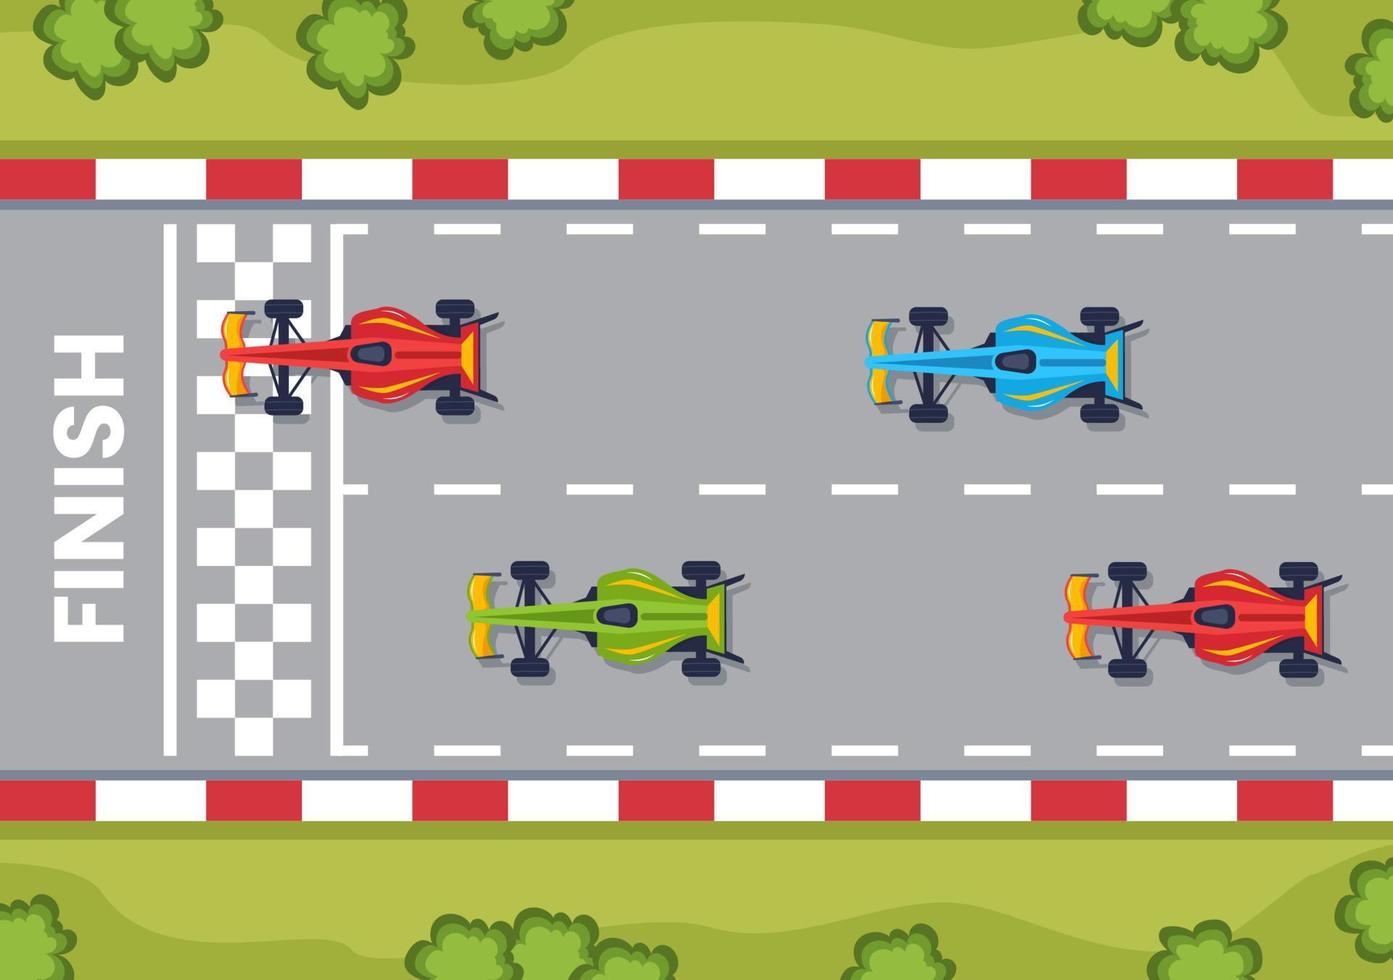 carro esportivo de corrida de fórmula alcance no circuito de corrida a ilustração dos desenhos animados da linha de chegada para ganhar o campeonato em design de estilo plano vetor